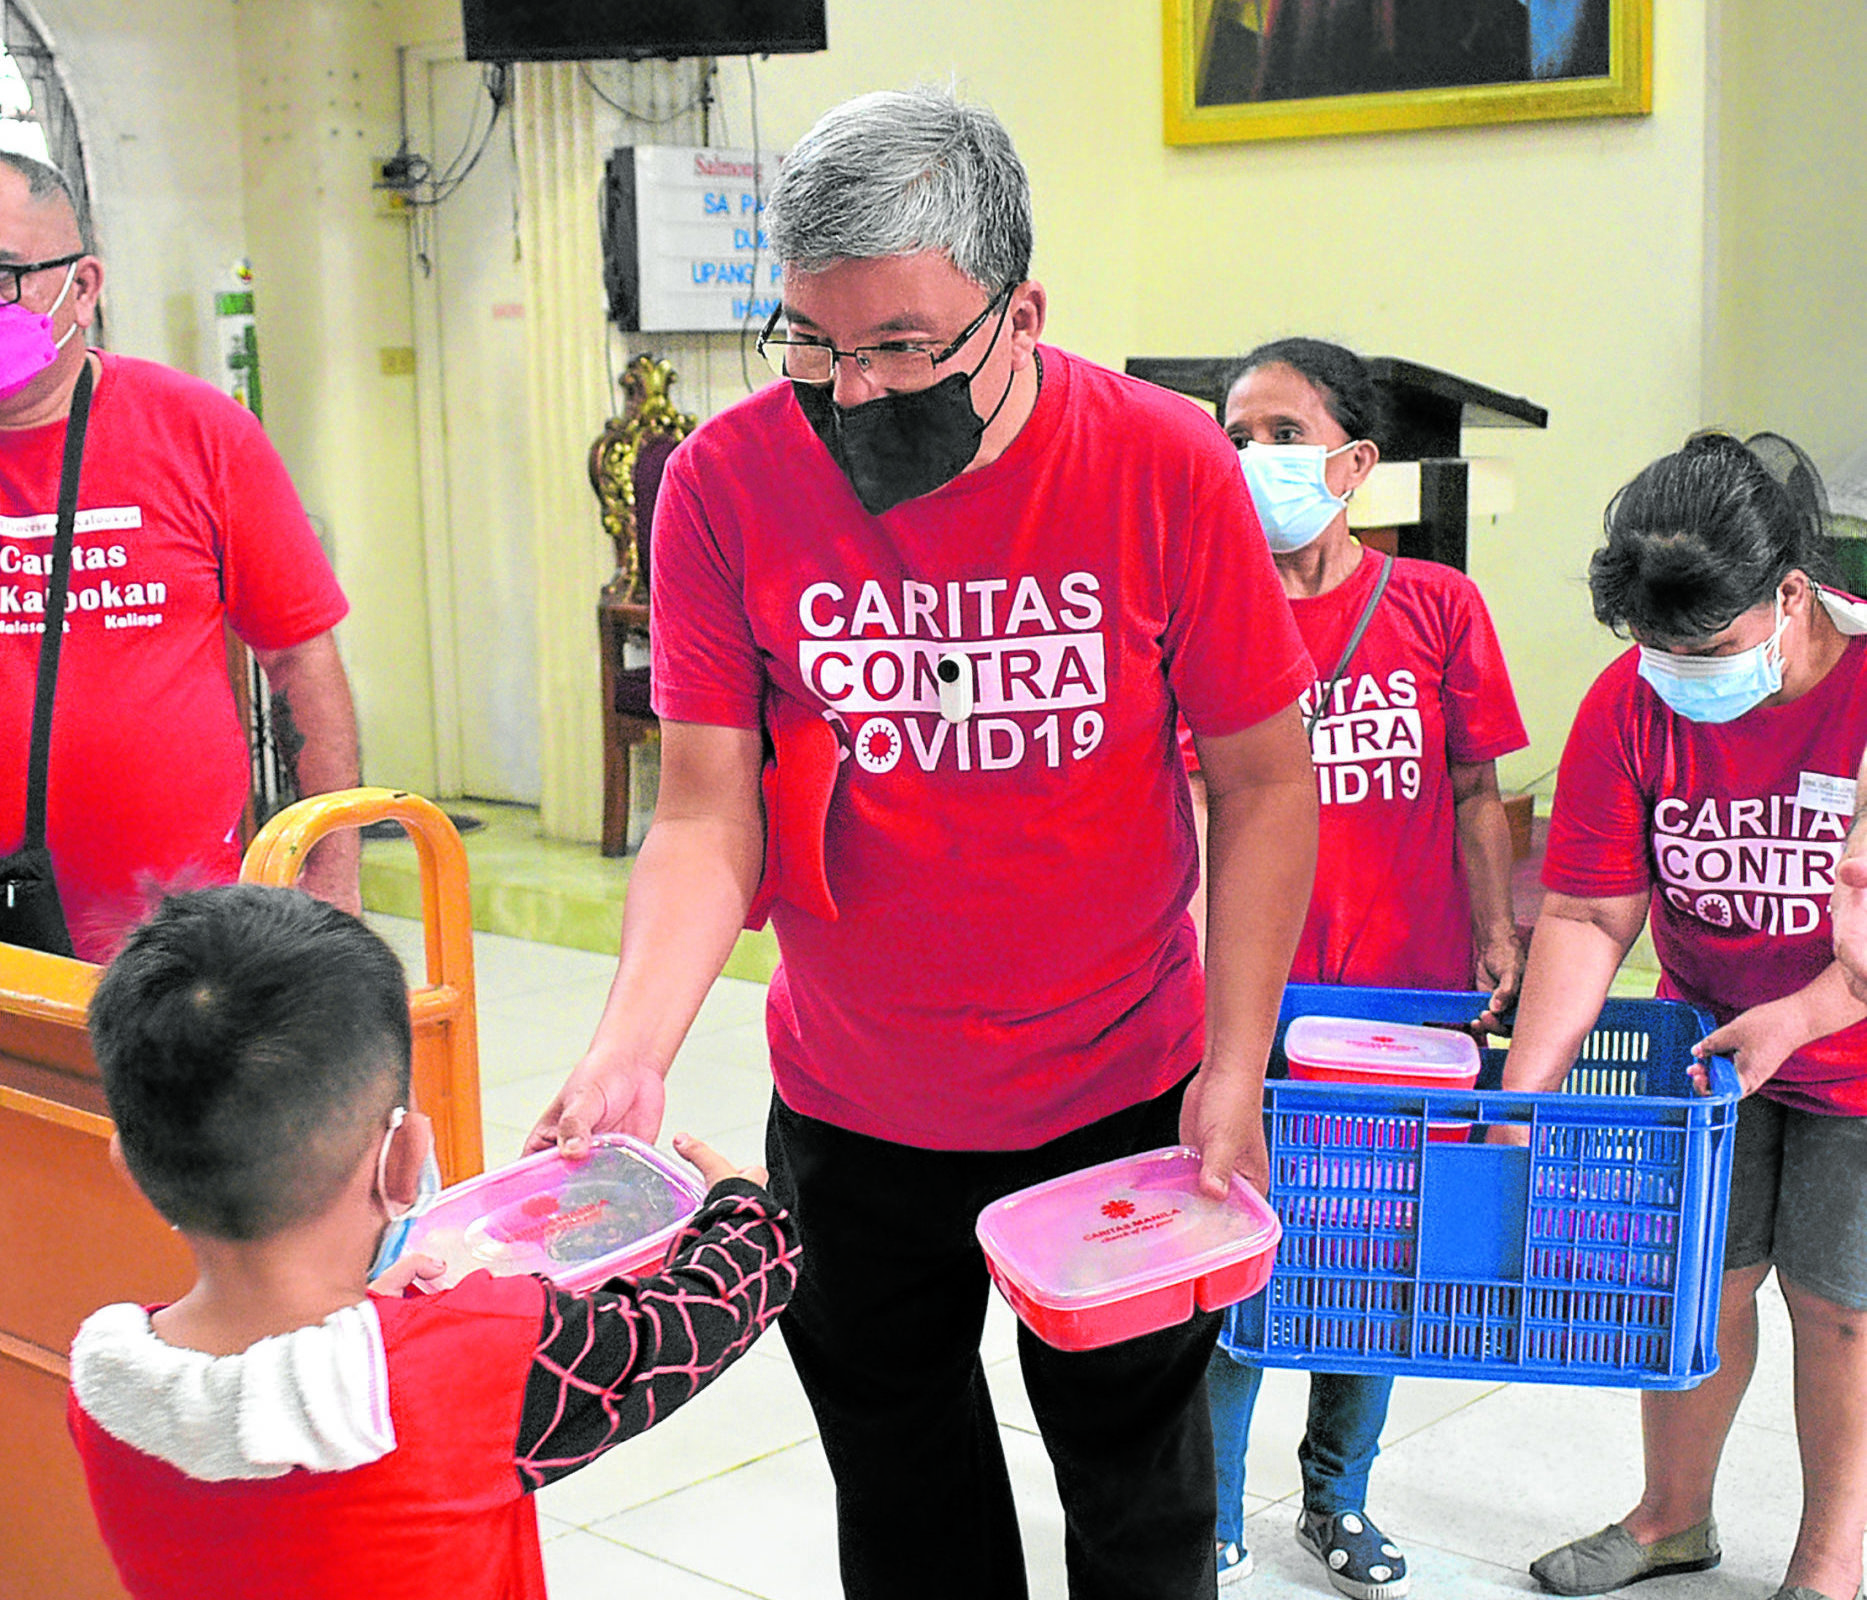 المدير التنفيذي كاريتاس مانيلا الأب.  يقود أنطون سي تي باسكوال برنامج التغذية Hapag-Asa للأطفال المصابين بسوء التغذية.